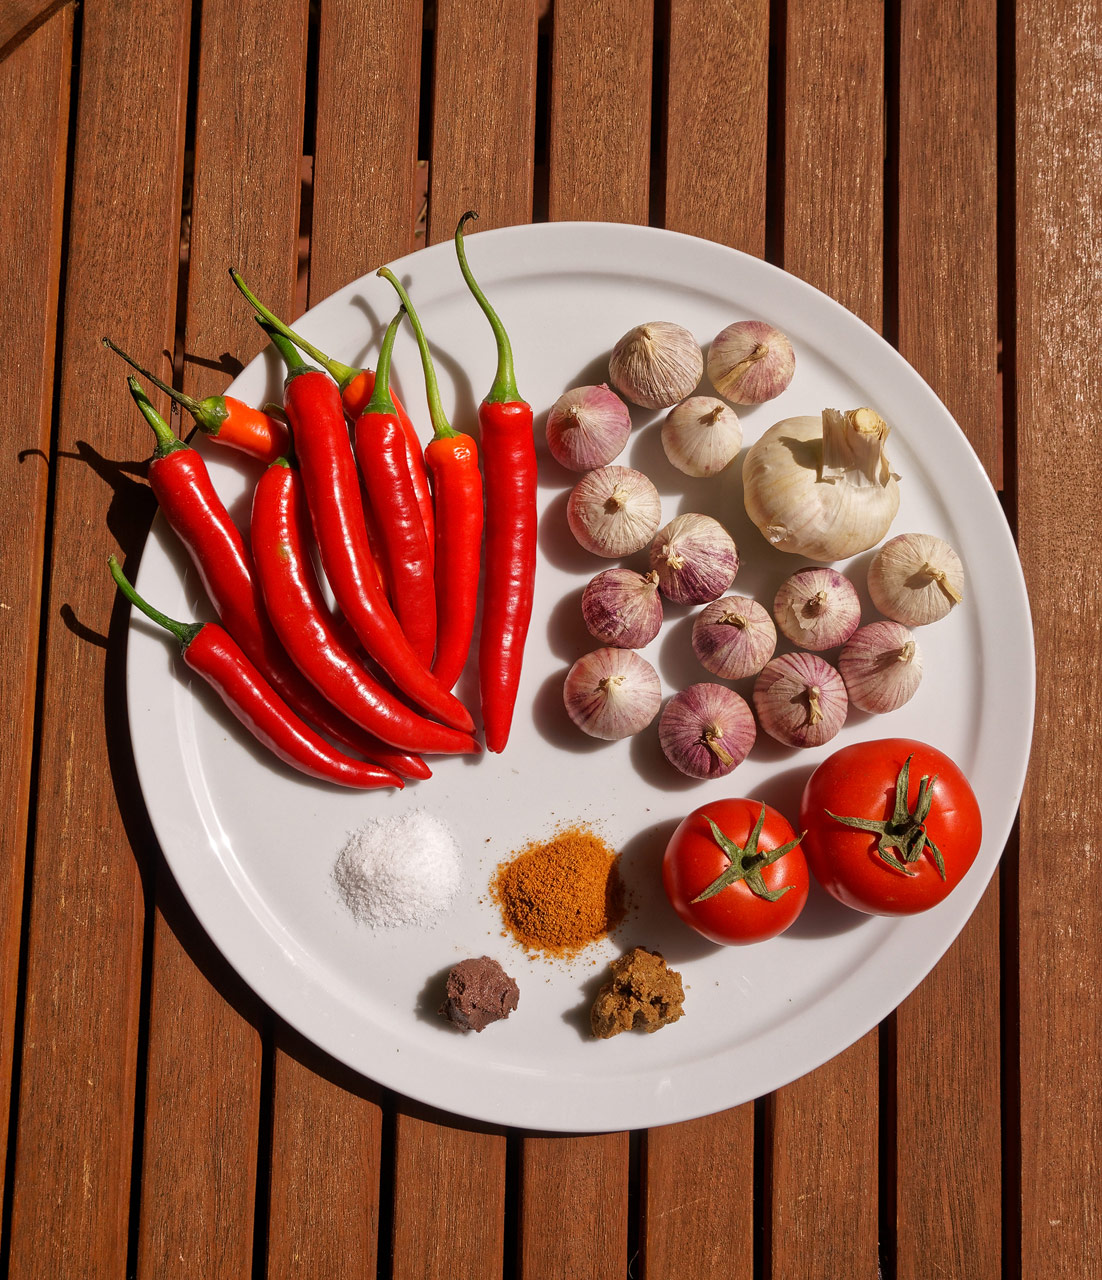 Zutaten für die indonesische Chili-Sauce